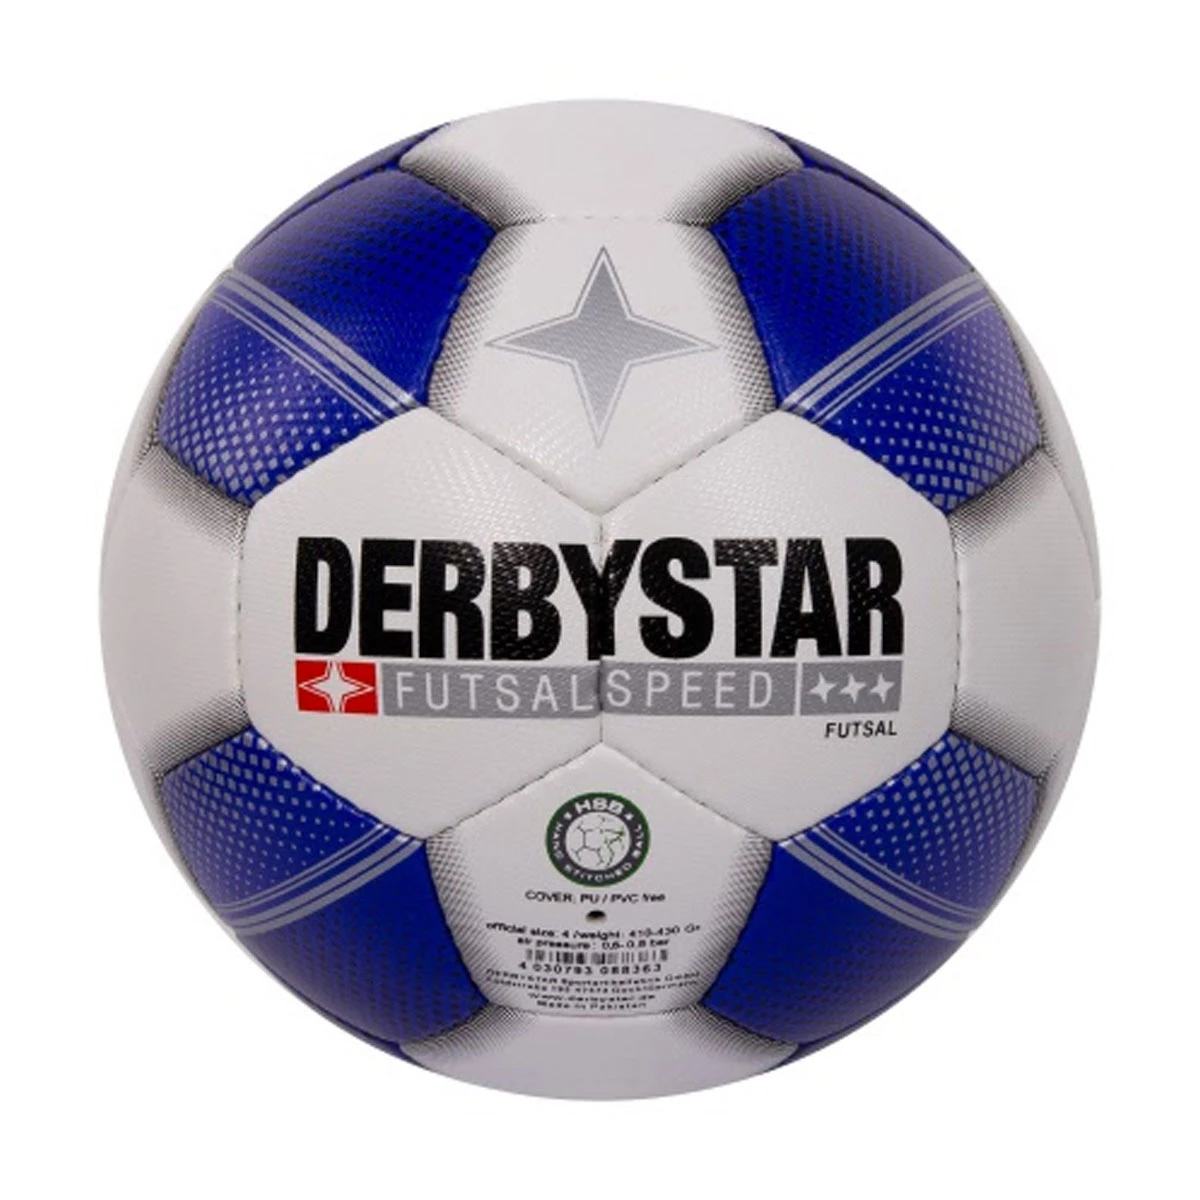 Lui marketing ginder Derbystar Futsal Speed Low Bounce Zaalvoetbal van zaalvoetballen